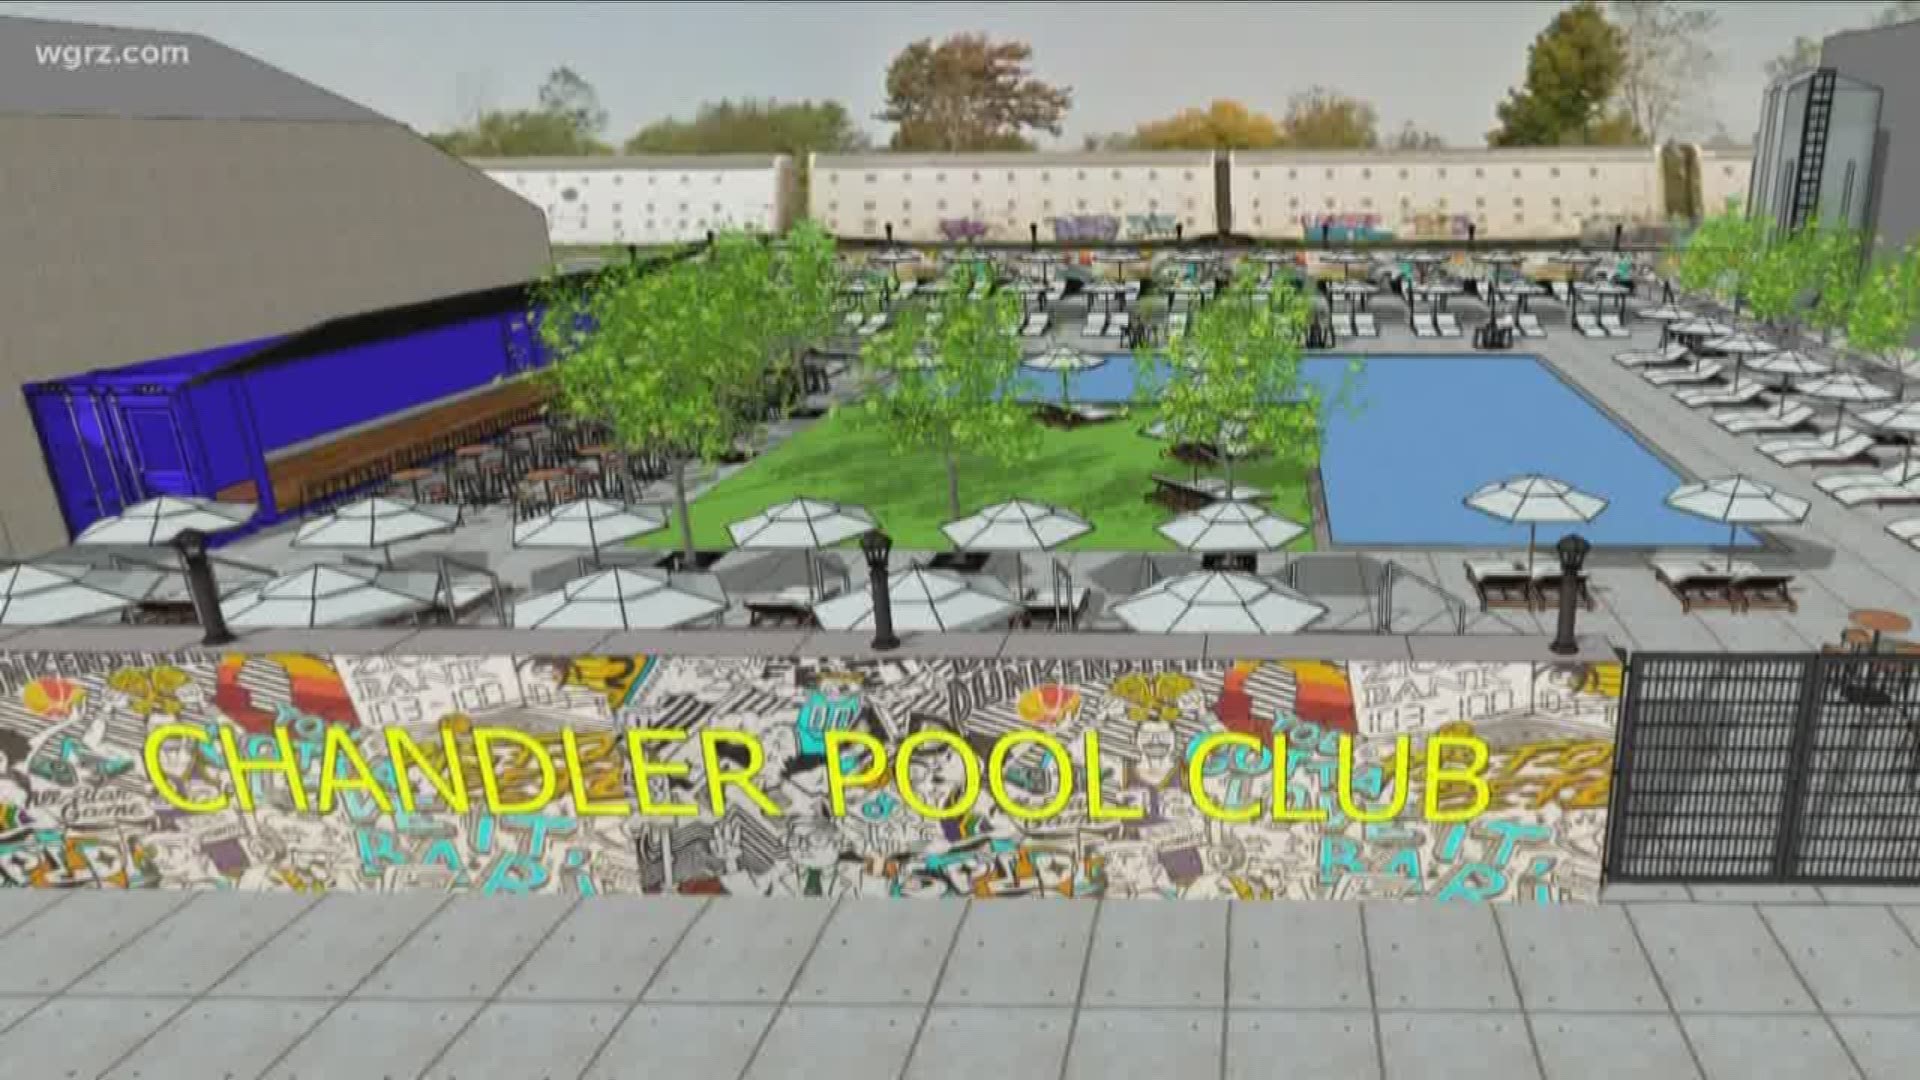 Chandler street pool club work to begin soon